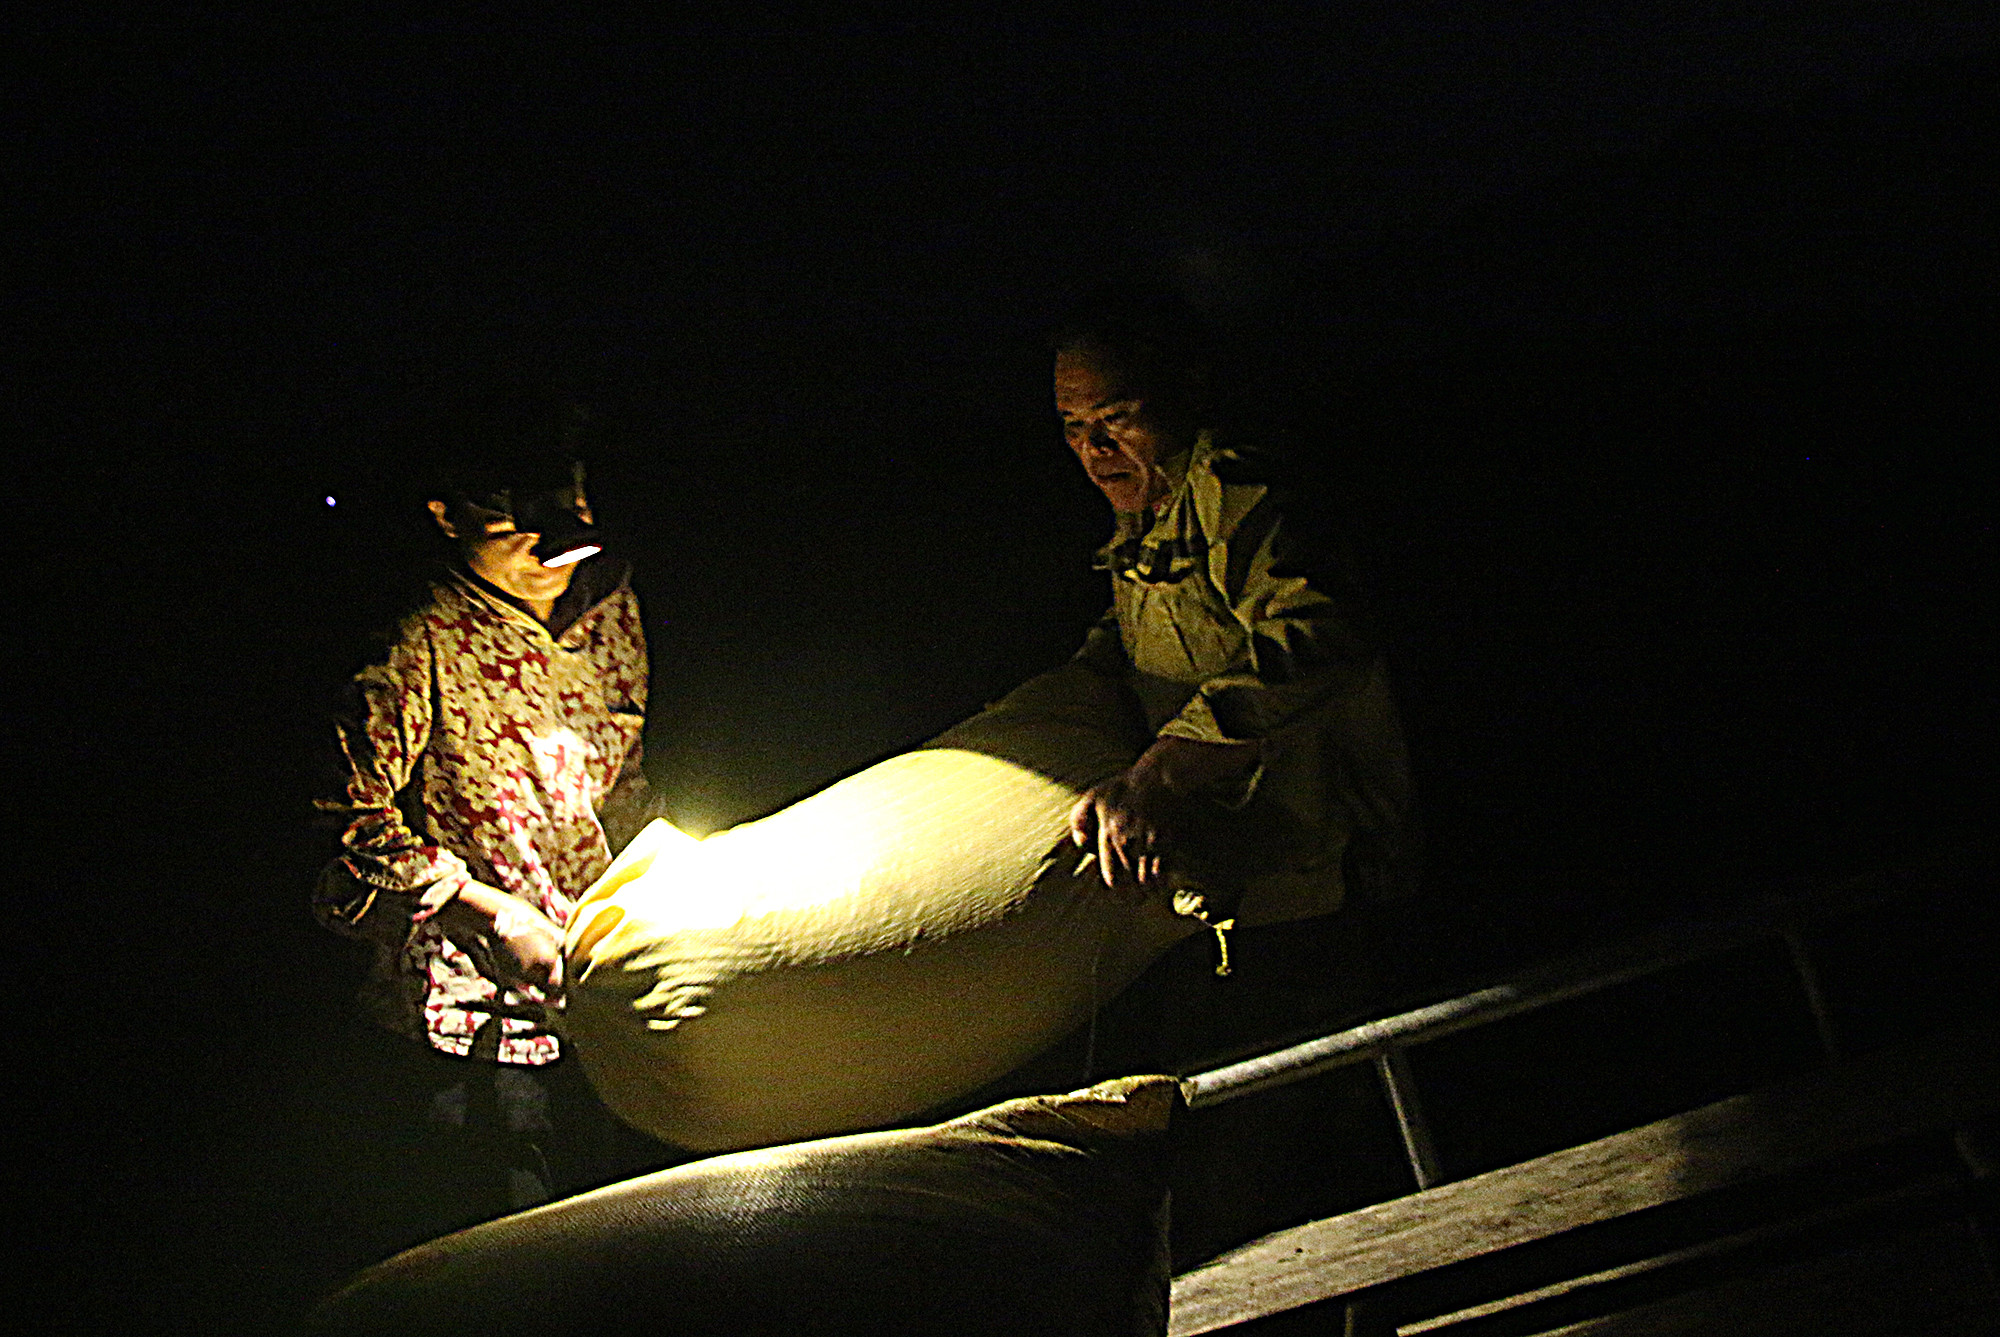 Một cặp vợ chồng chuyển lúa lên xe lôi trong đêm tối Ảnh : Hữu Vi